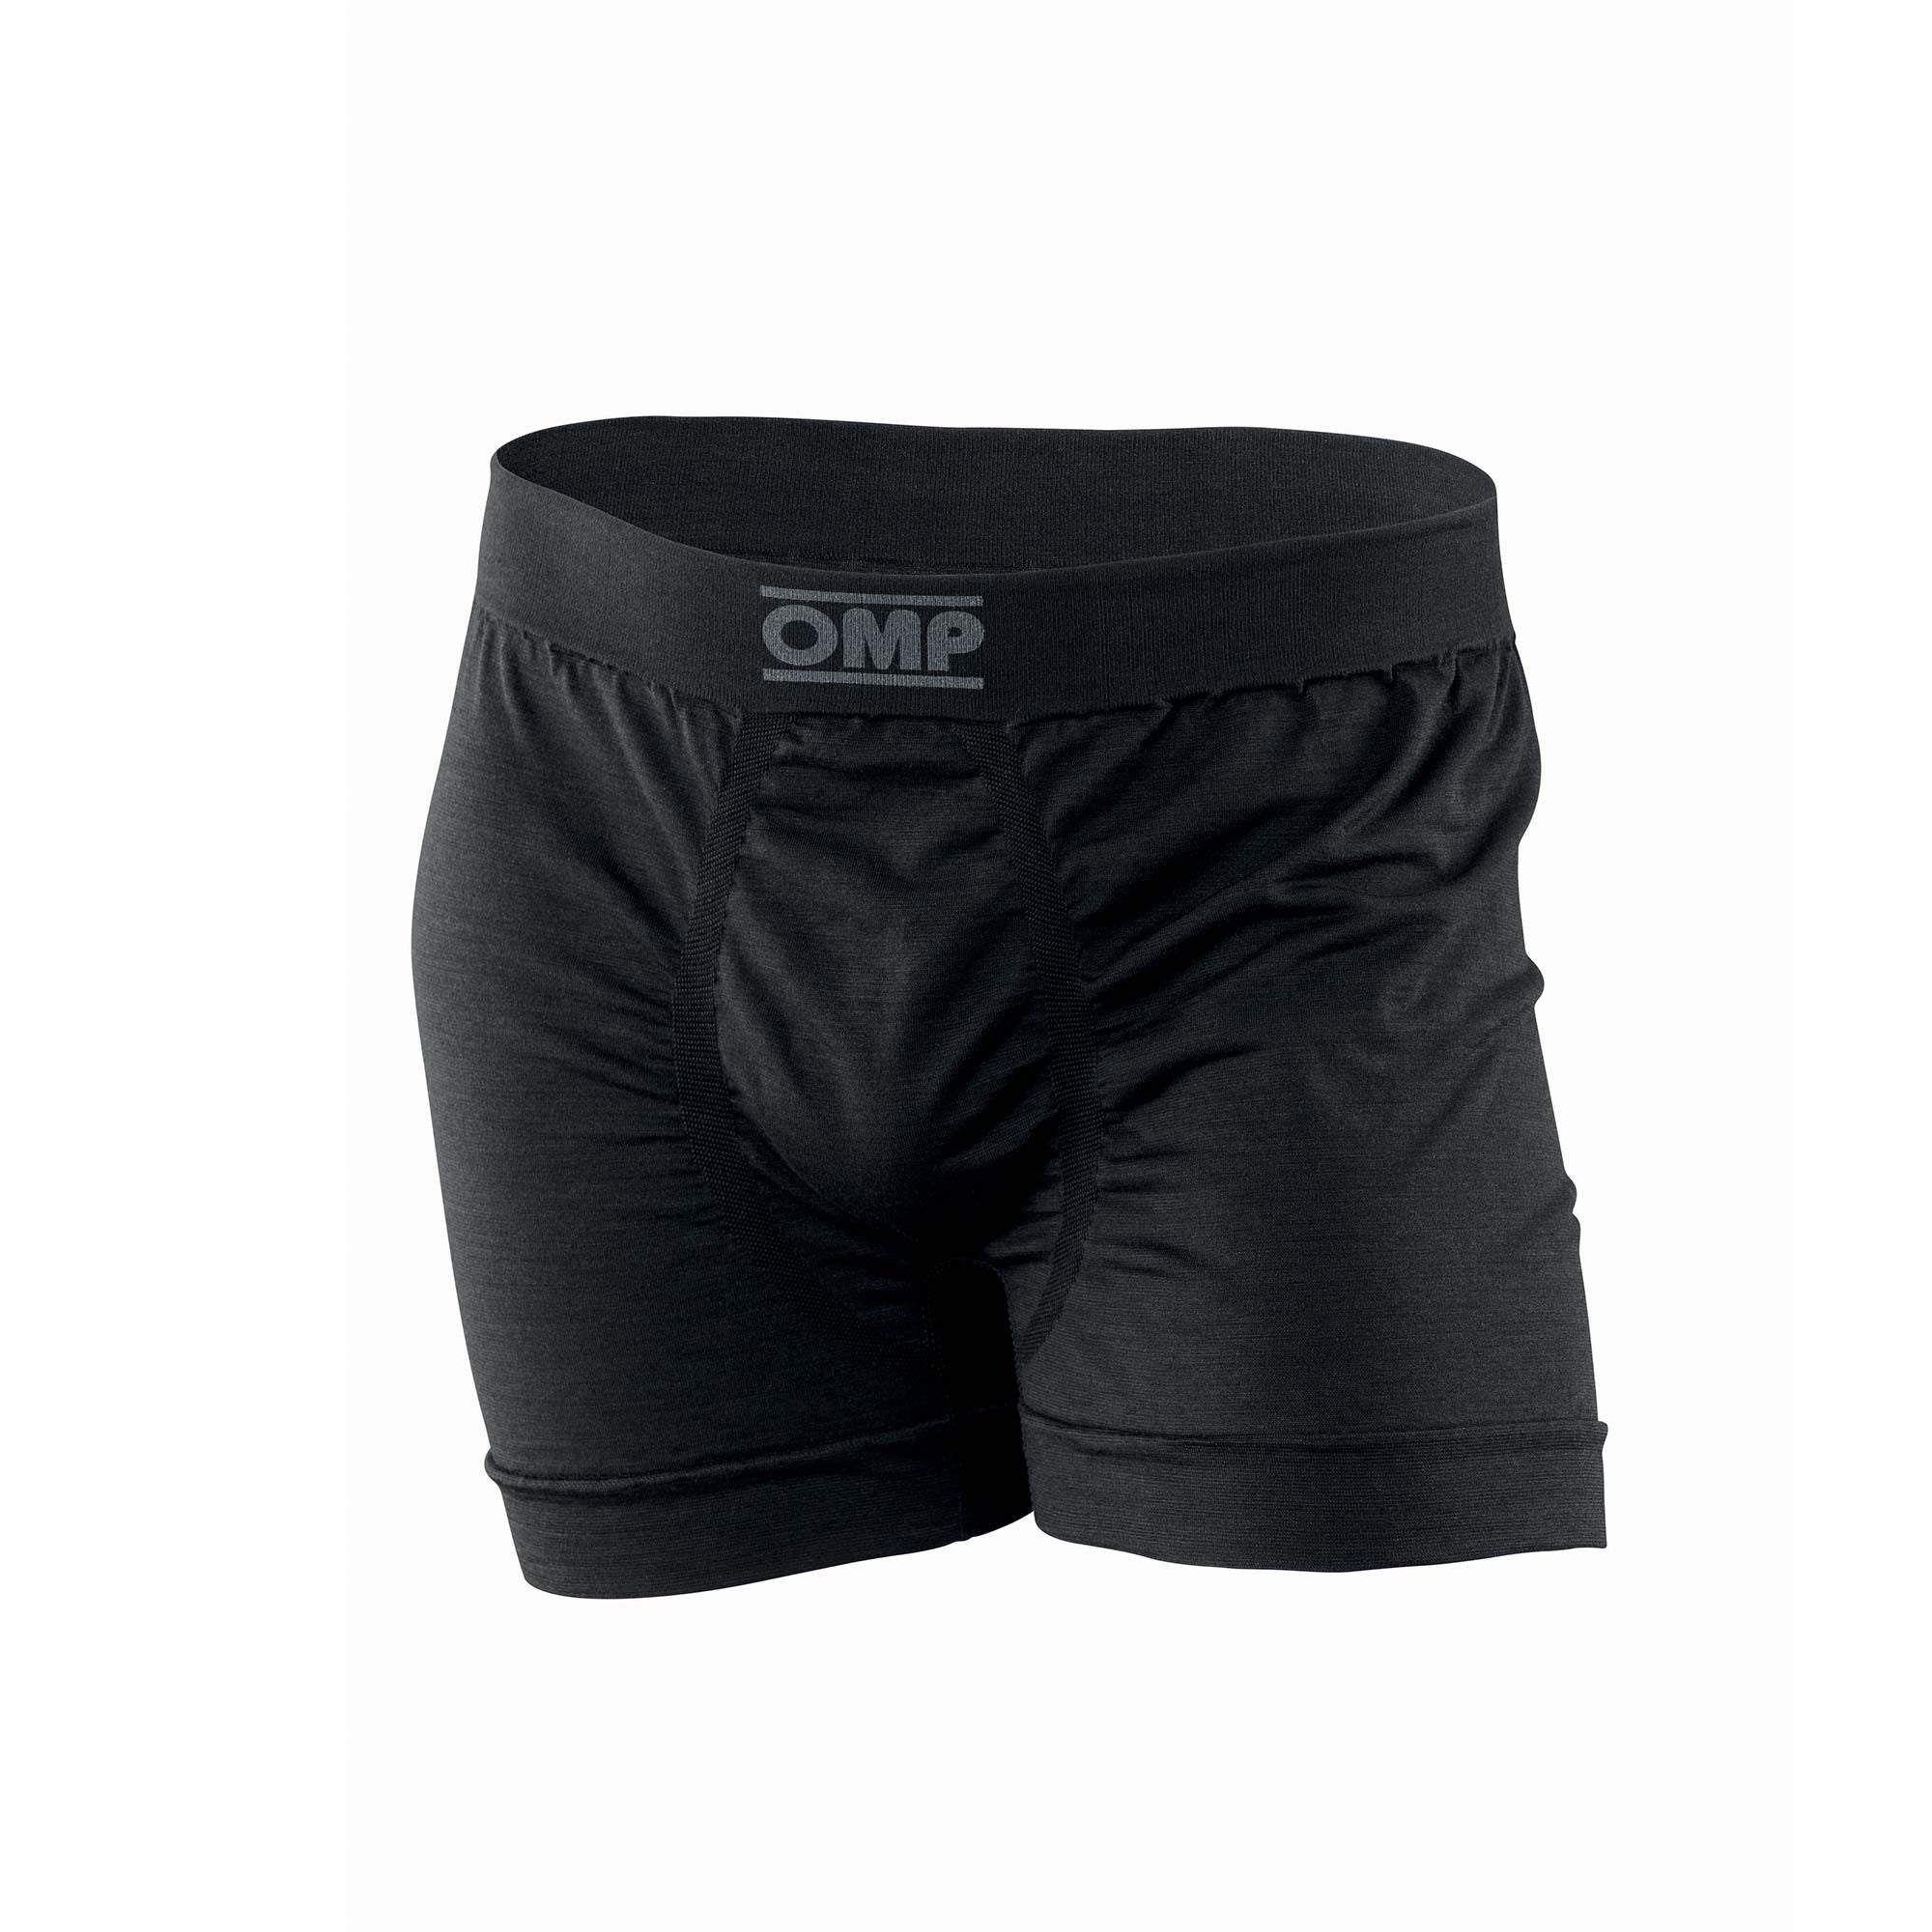 OMP IE0-0785-A01-071-M Boxer underwear, FIA 8856-2018, black, size M Photo-0 